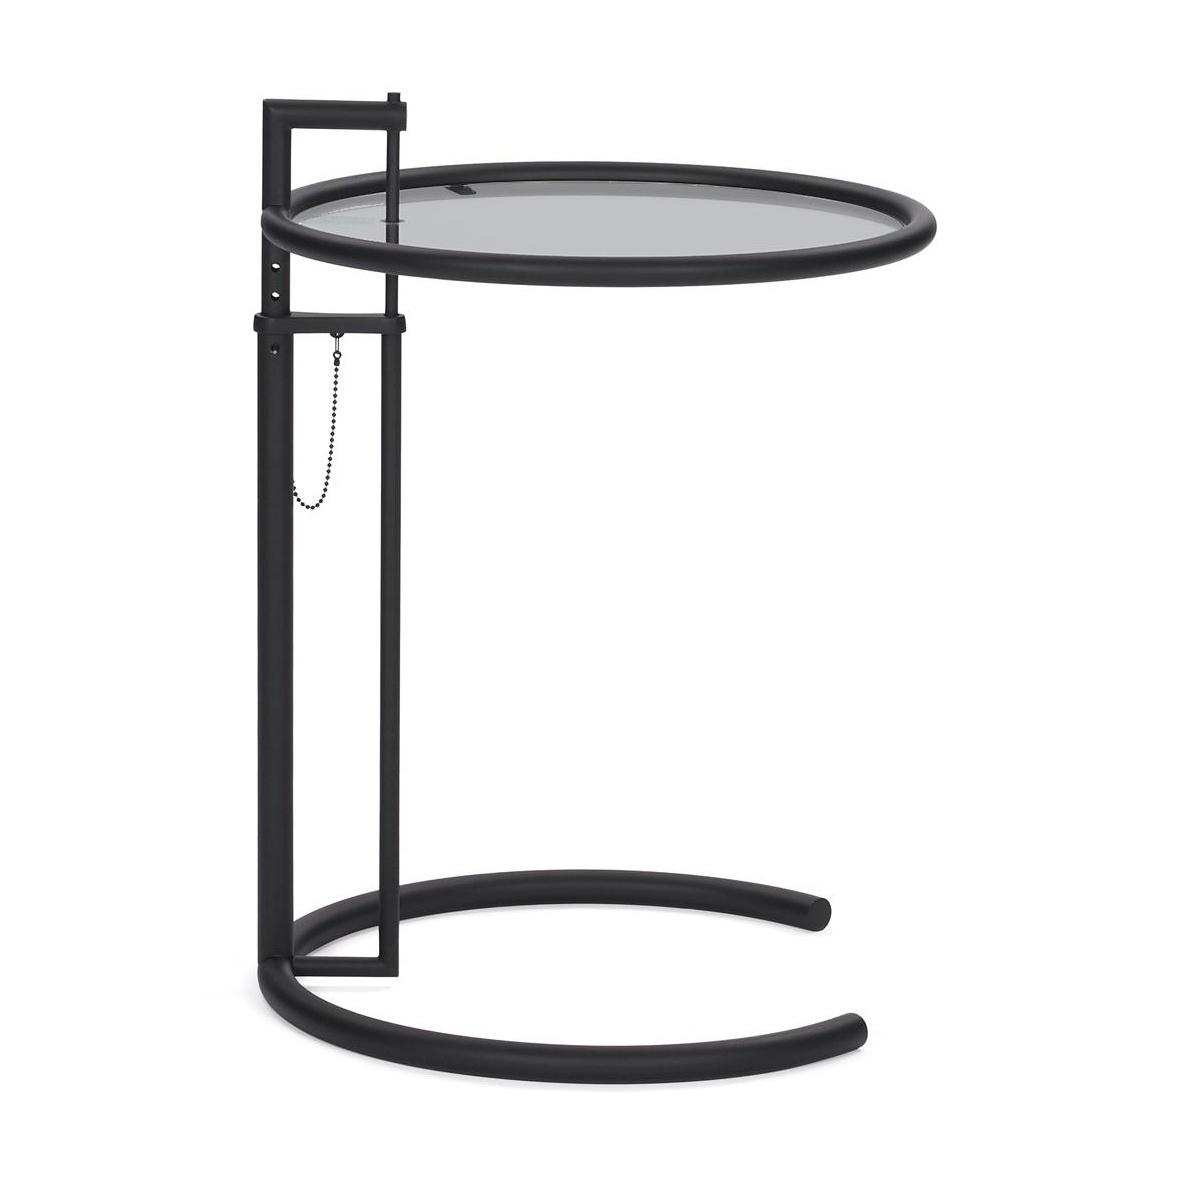 ClassiCon - Adjustable Table E 1027 Black Version - rauchgrau/Parsolglas/Ø52cm/höhenverstellbar H 64-102cm/Gestell schwarz pulverbeschichtet von ClassiCon